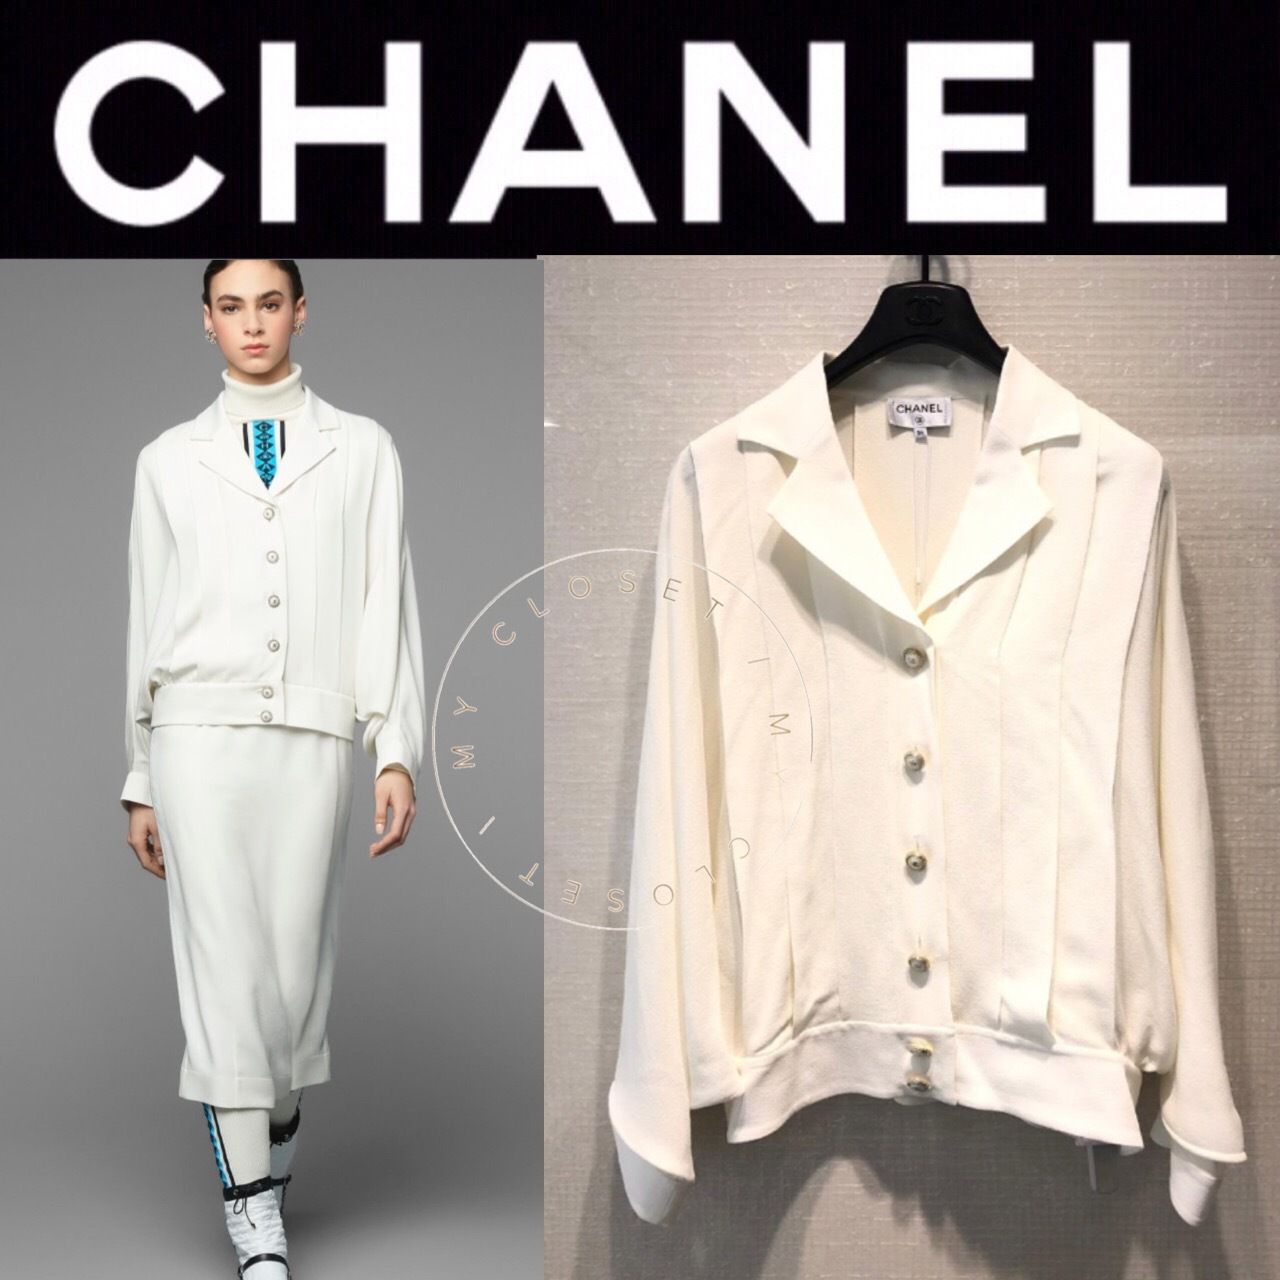 Chanel - Camisa em seda , SS 2019/20 - cantinho das grifes